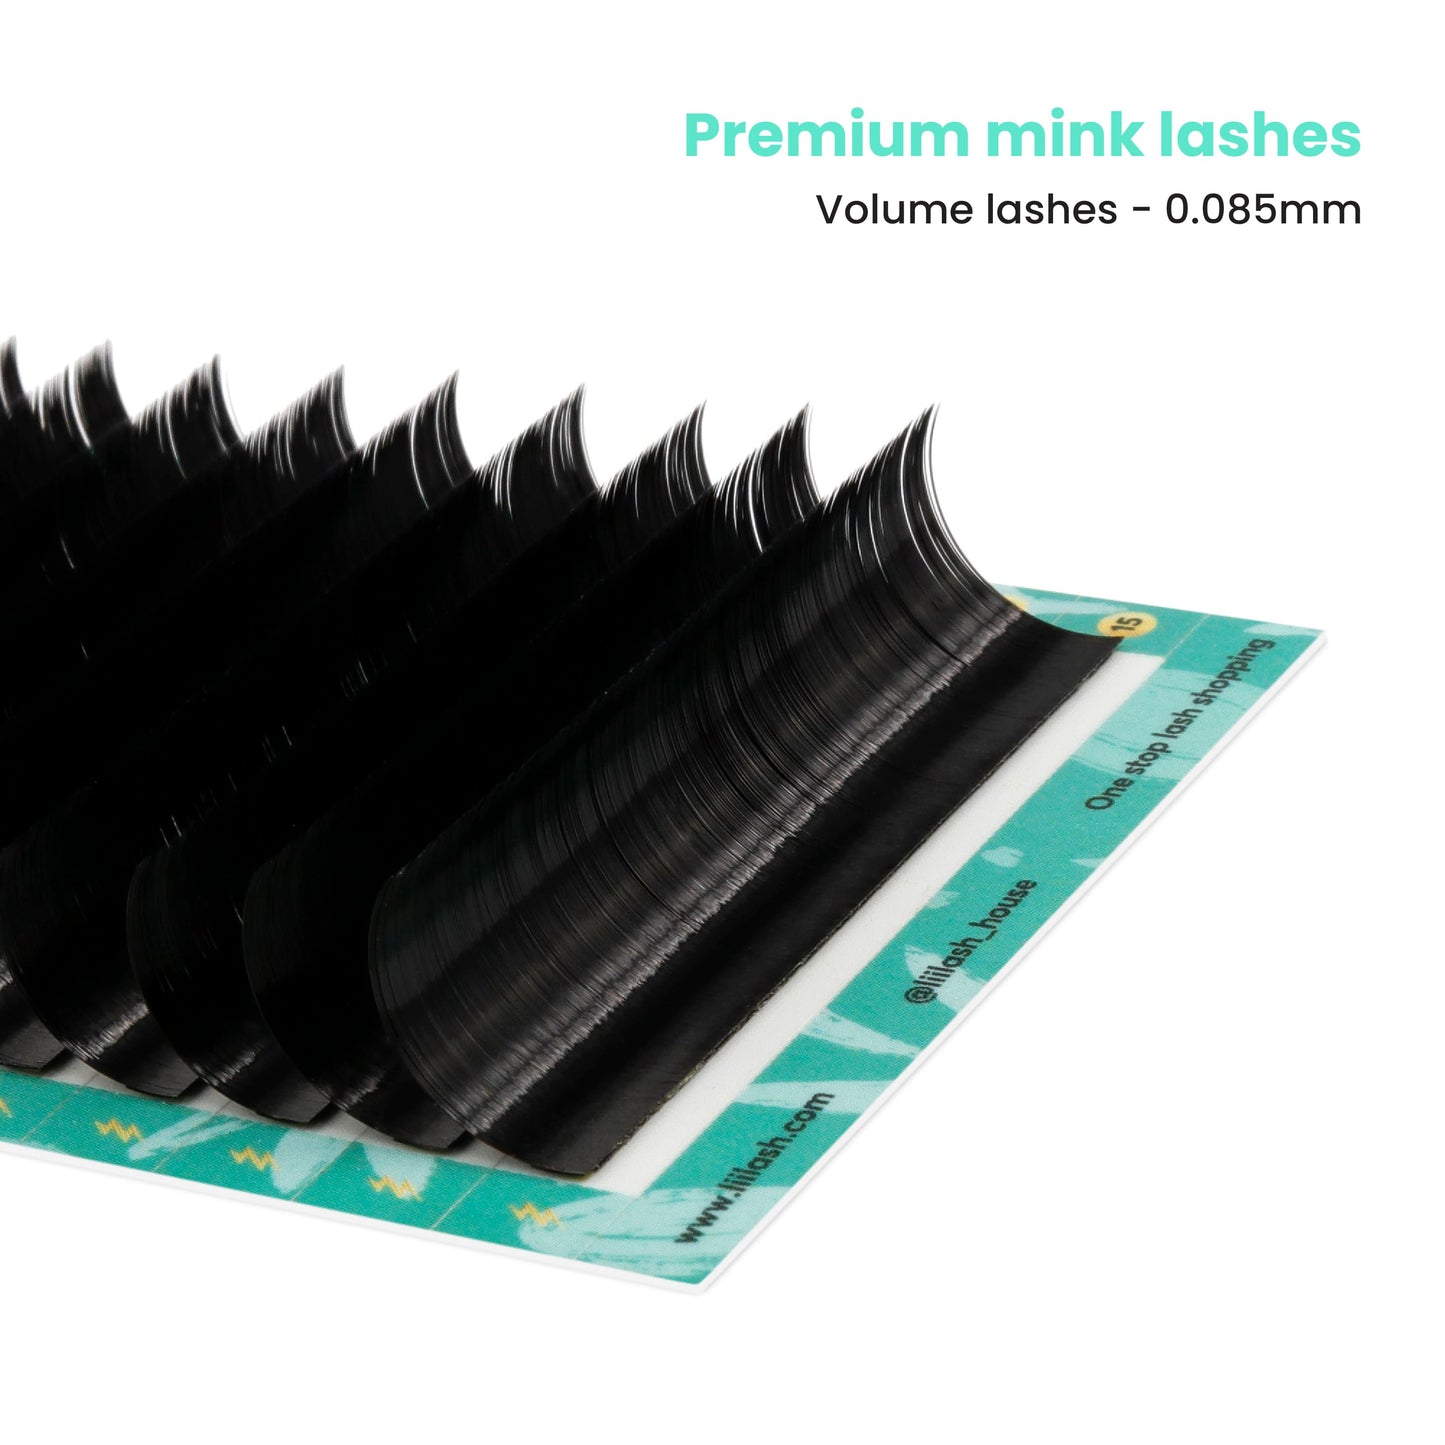 Premium Mink volume lashes 0.085mm